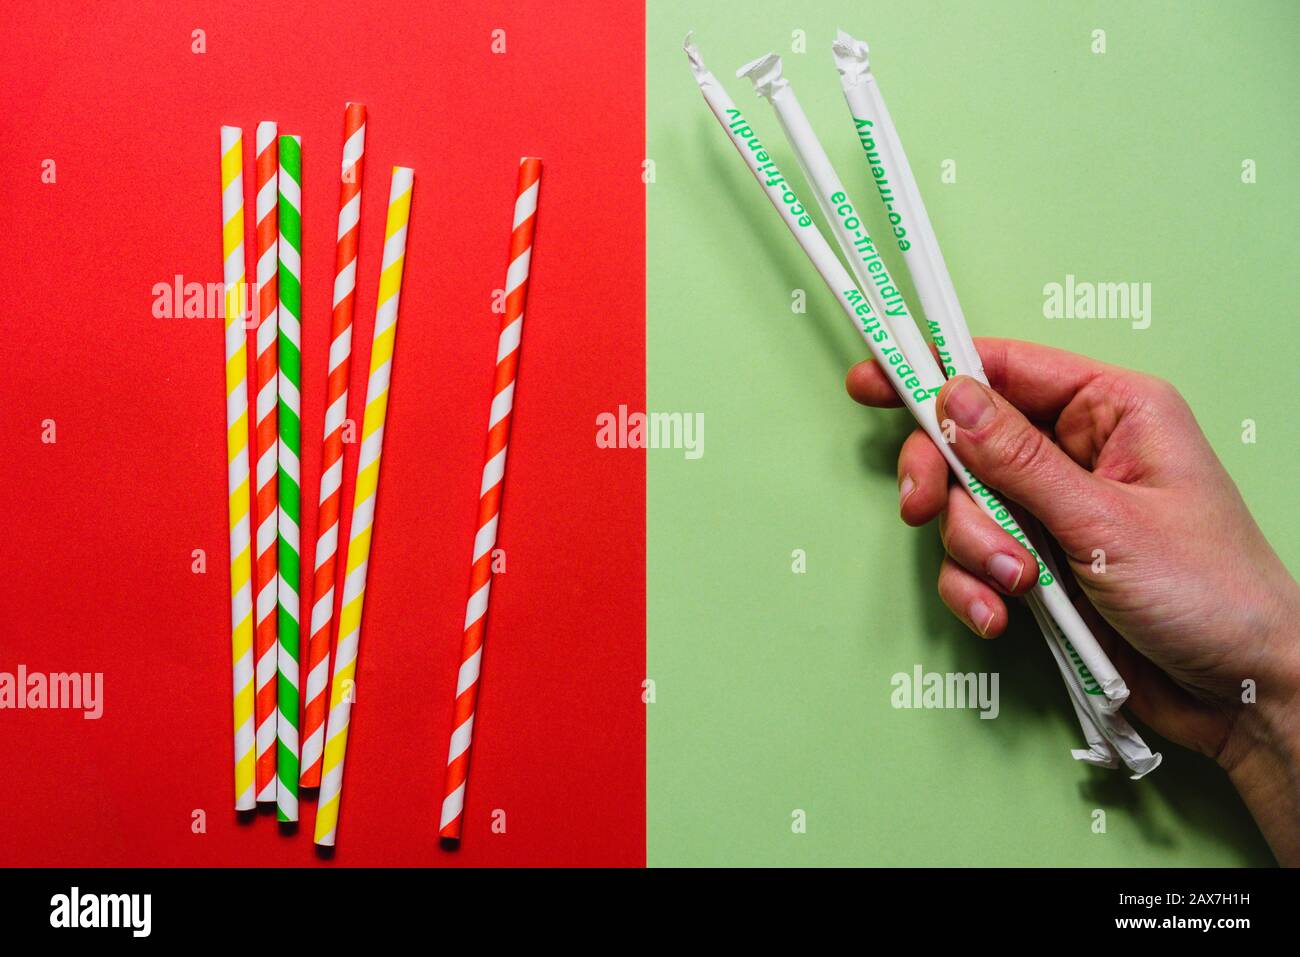 Papierstraten im Vergleich zu Kunststoff-Strohhalmen auf rotem und grünem Hintergrund Stockfoto